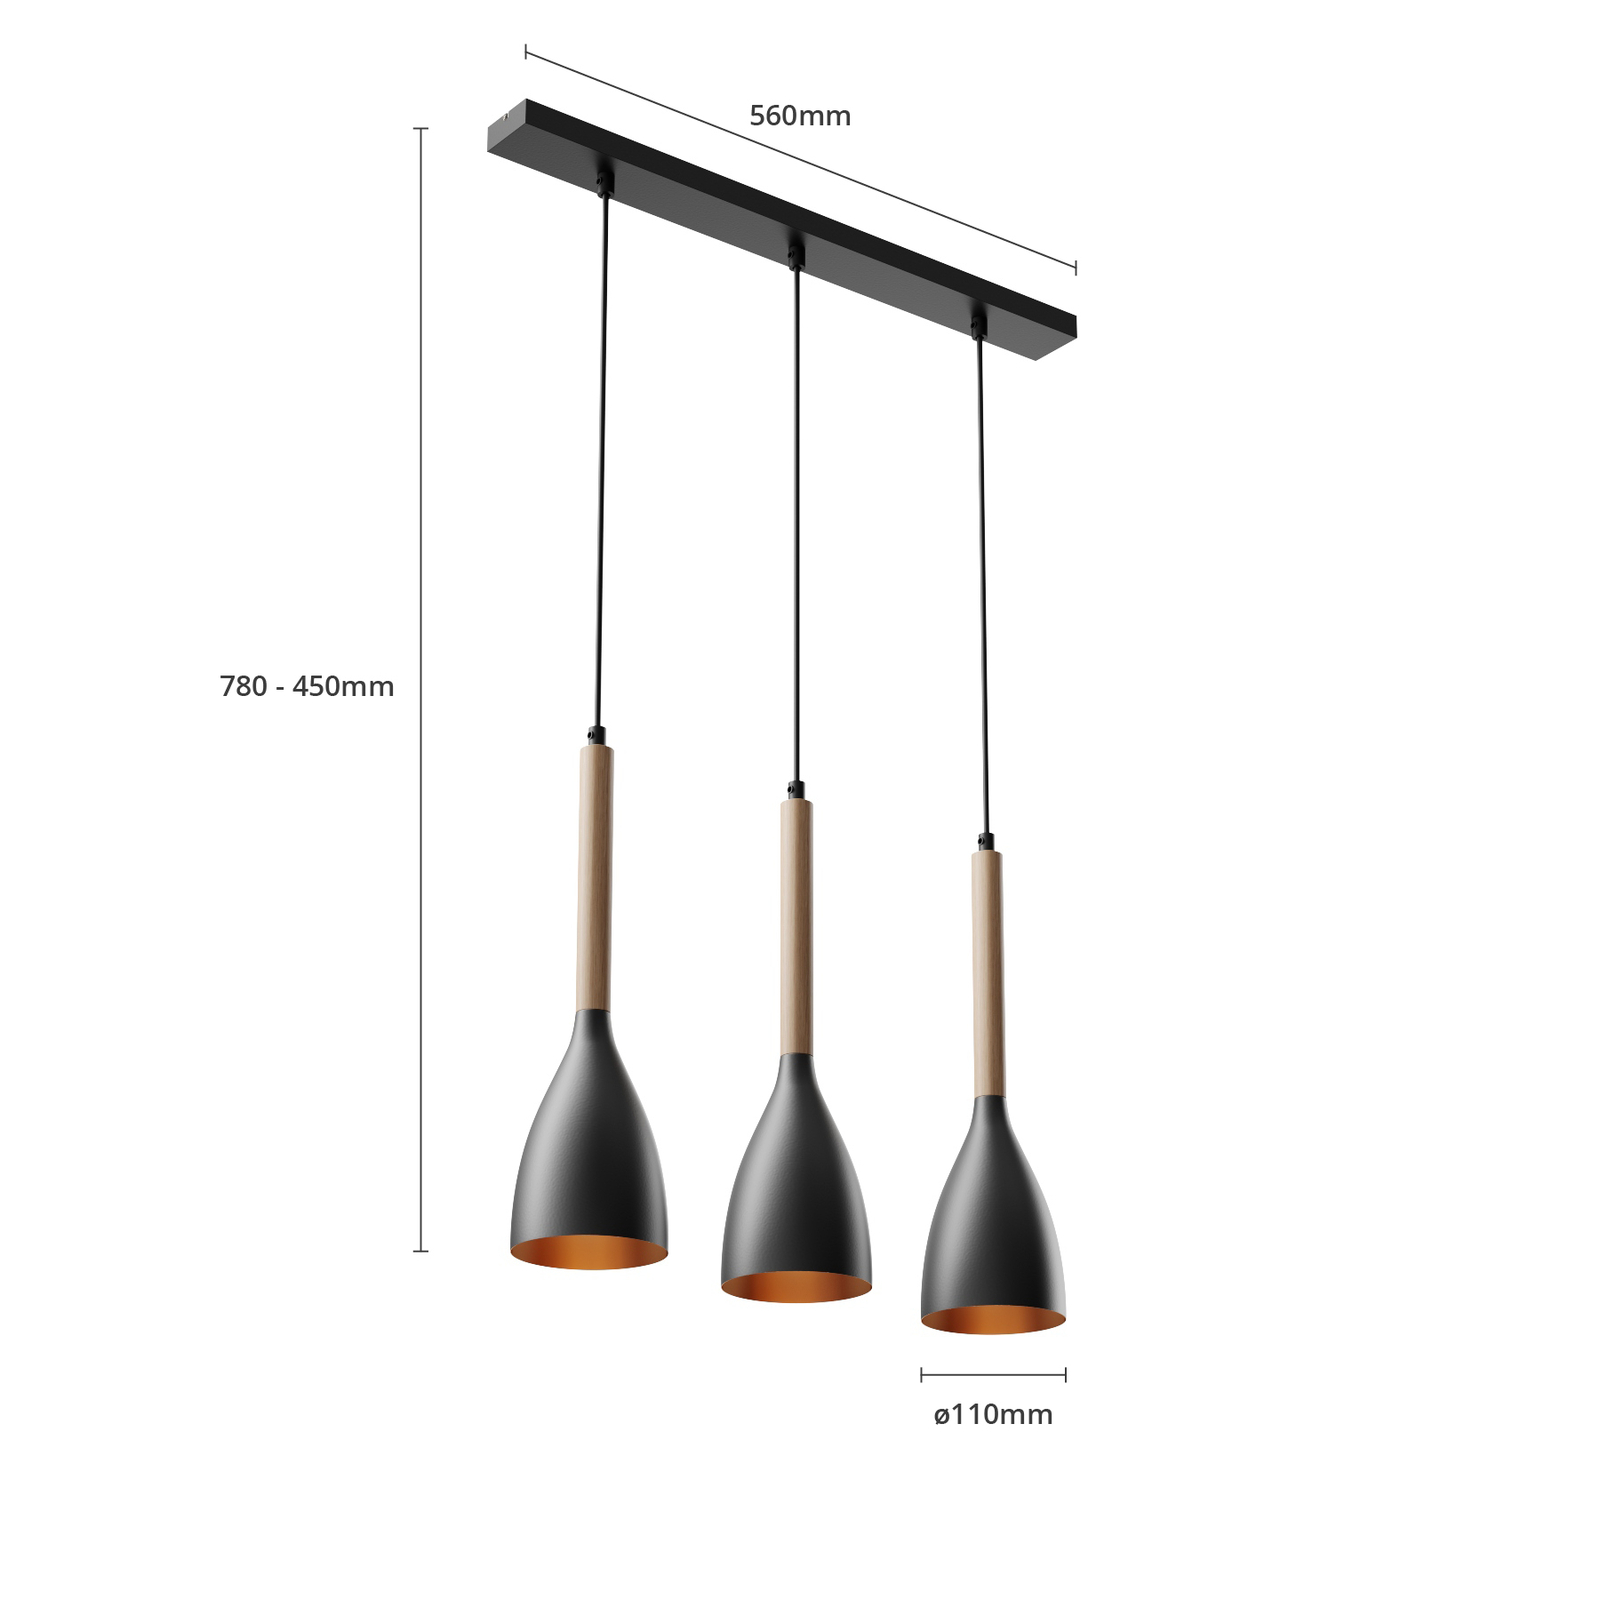 Muza 3-bulb pendant light long black/light wood